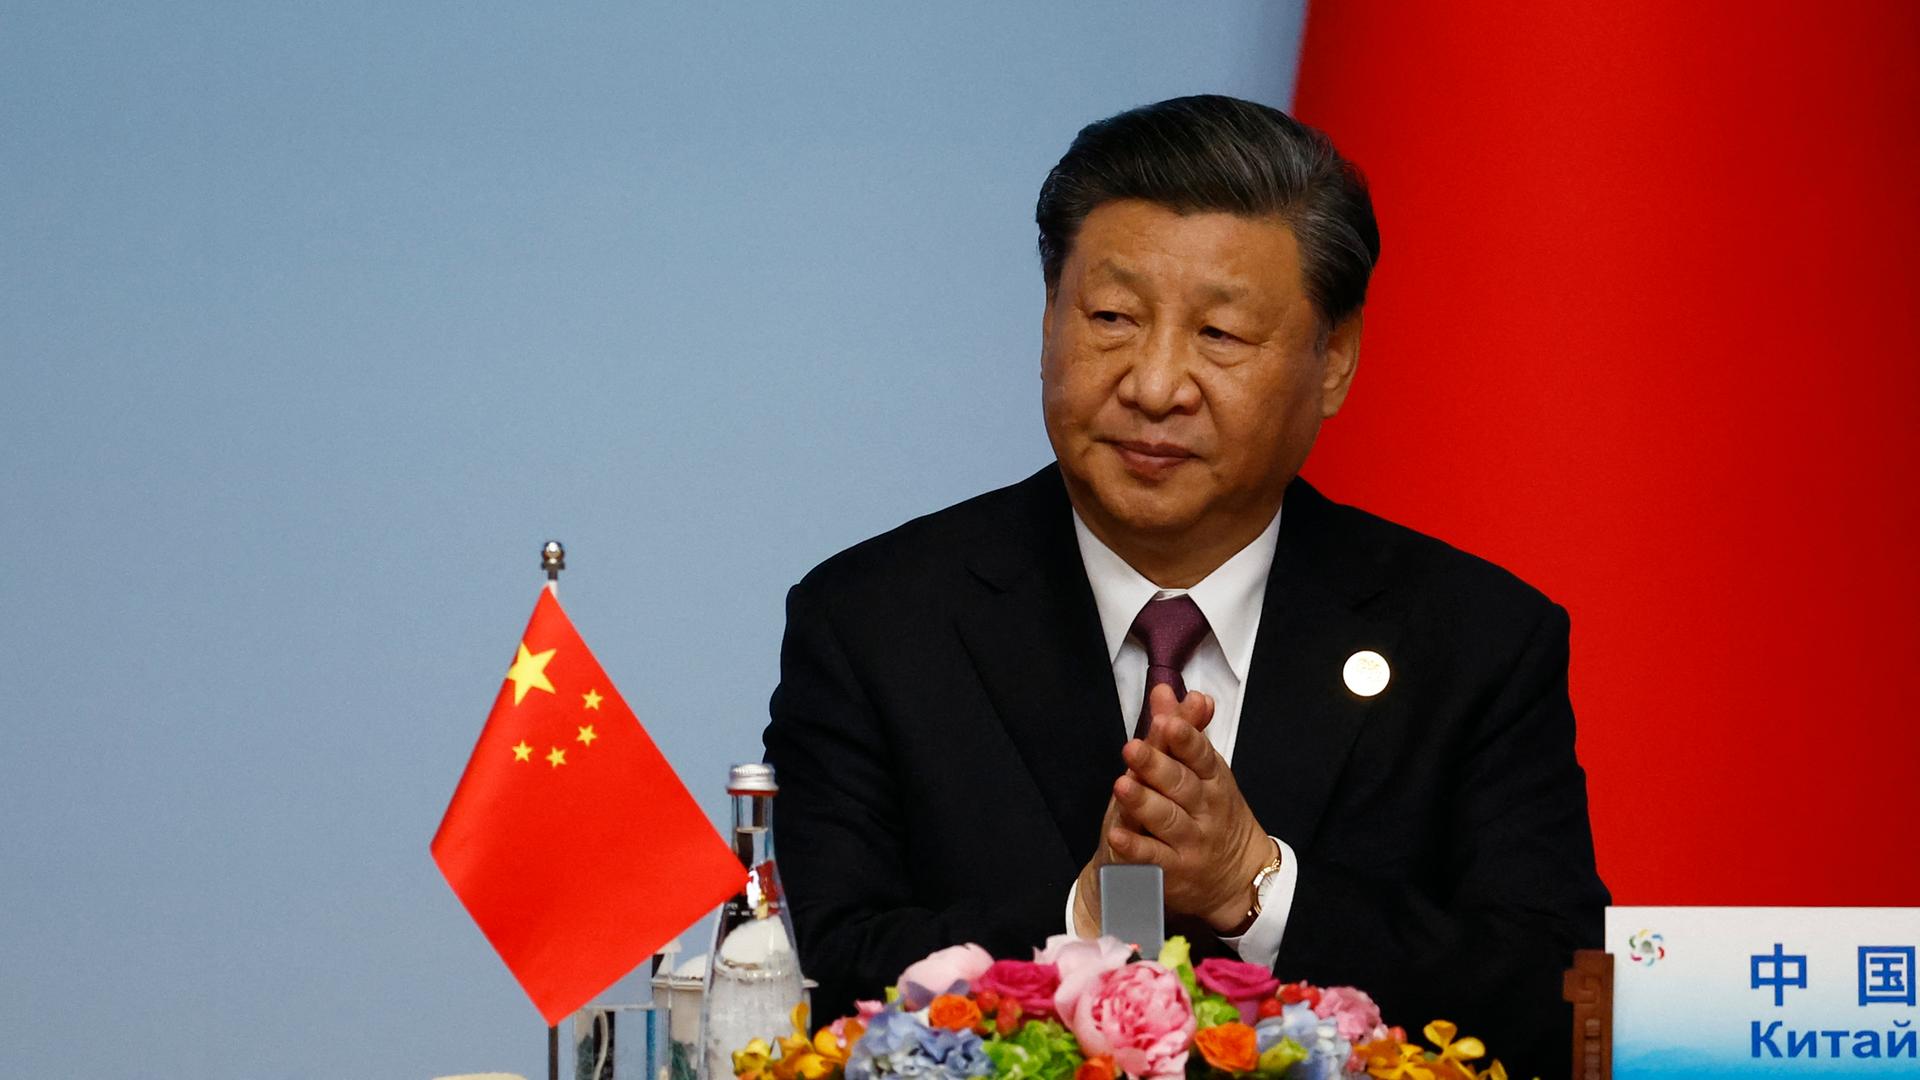 Der chinesische Präsident Xi Jinping sitzt an einem Tisch hinter einem Mikrofon. Auf dem Tisch steht eine chinesische Flagge.